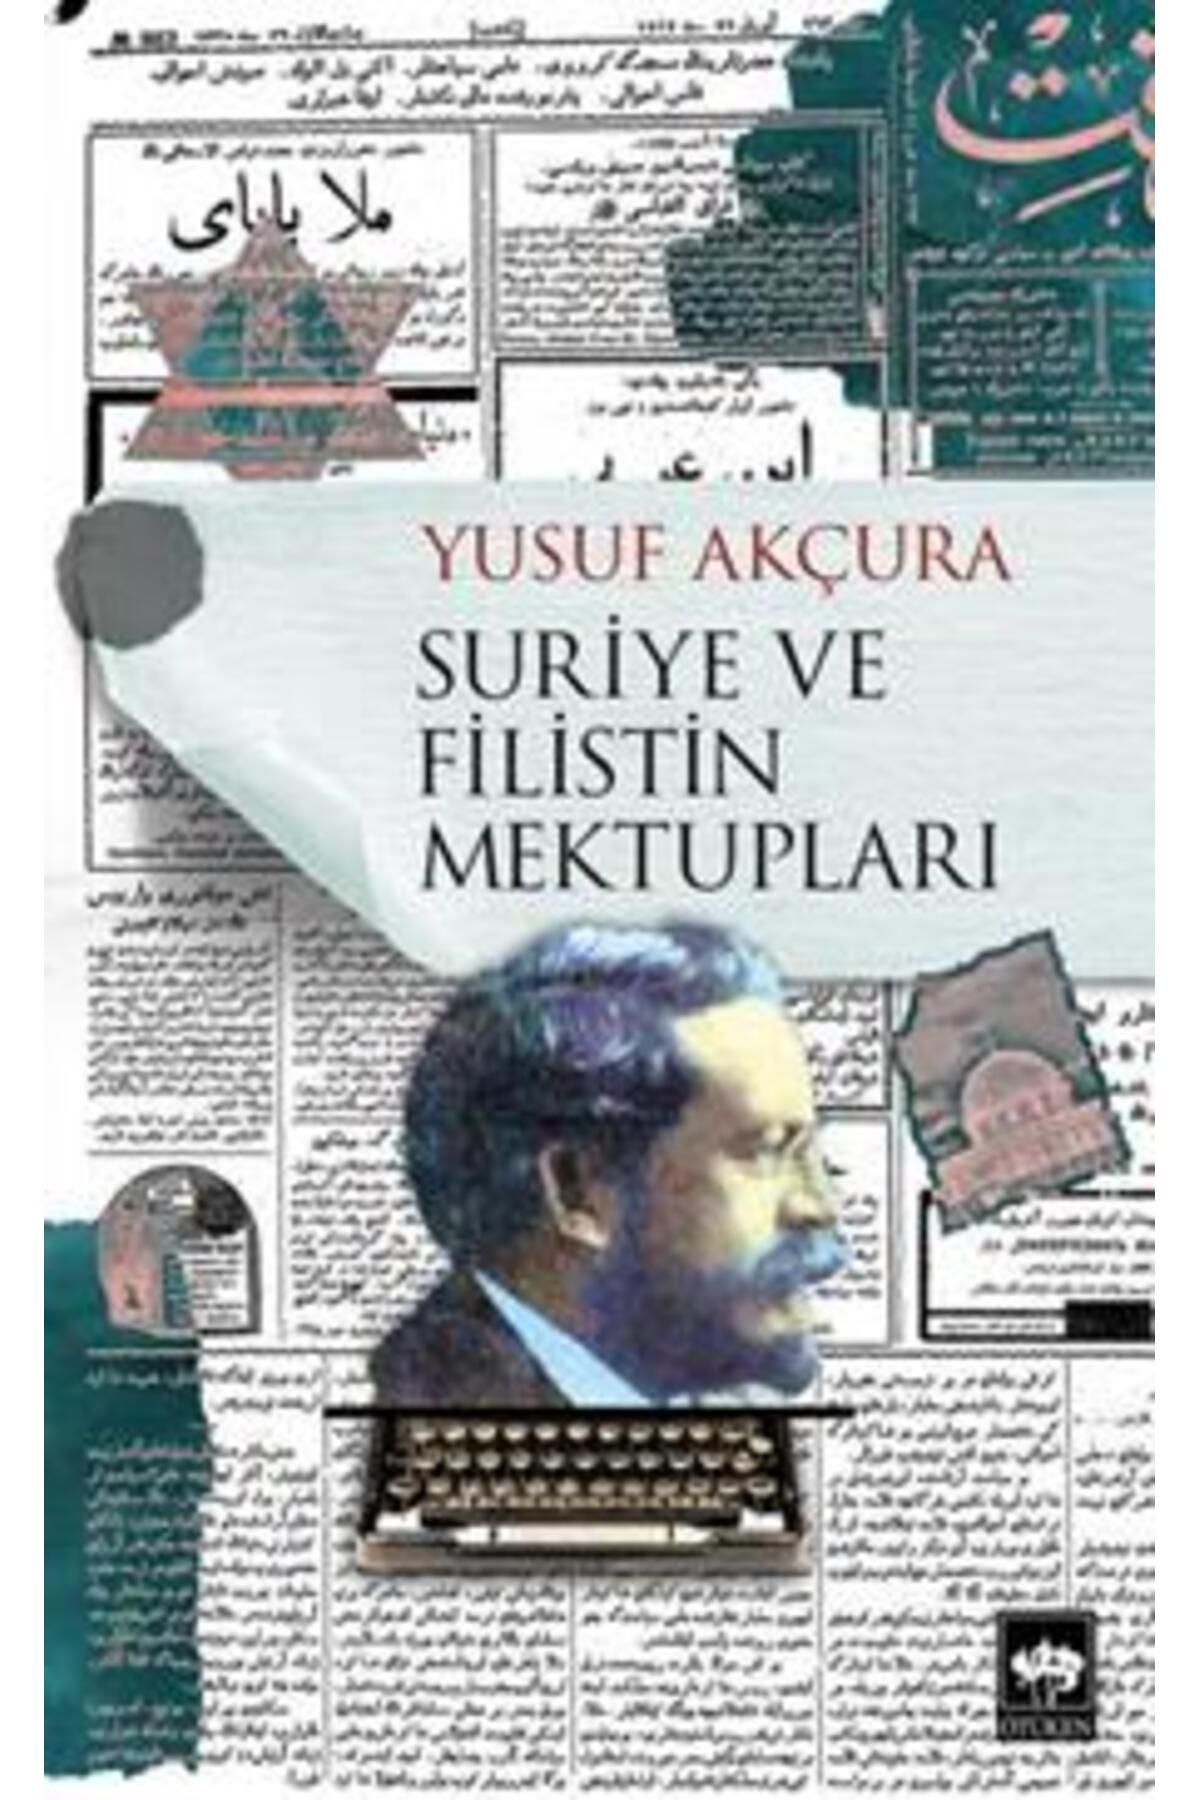 Ötüken Neşriyat Suriye ve Filistin Mektupları kitabı - Yusuf Akçura - Ötüken Neşriyat